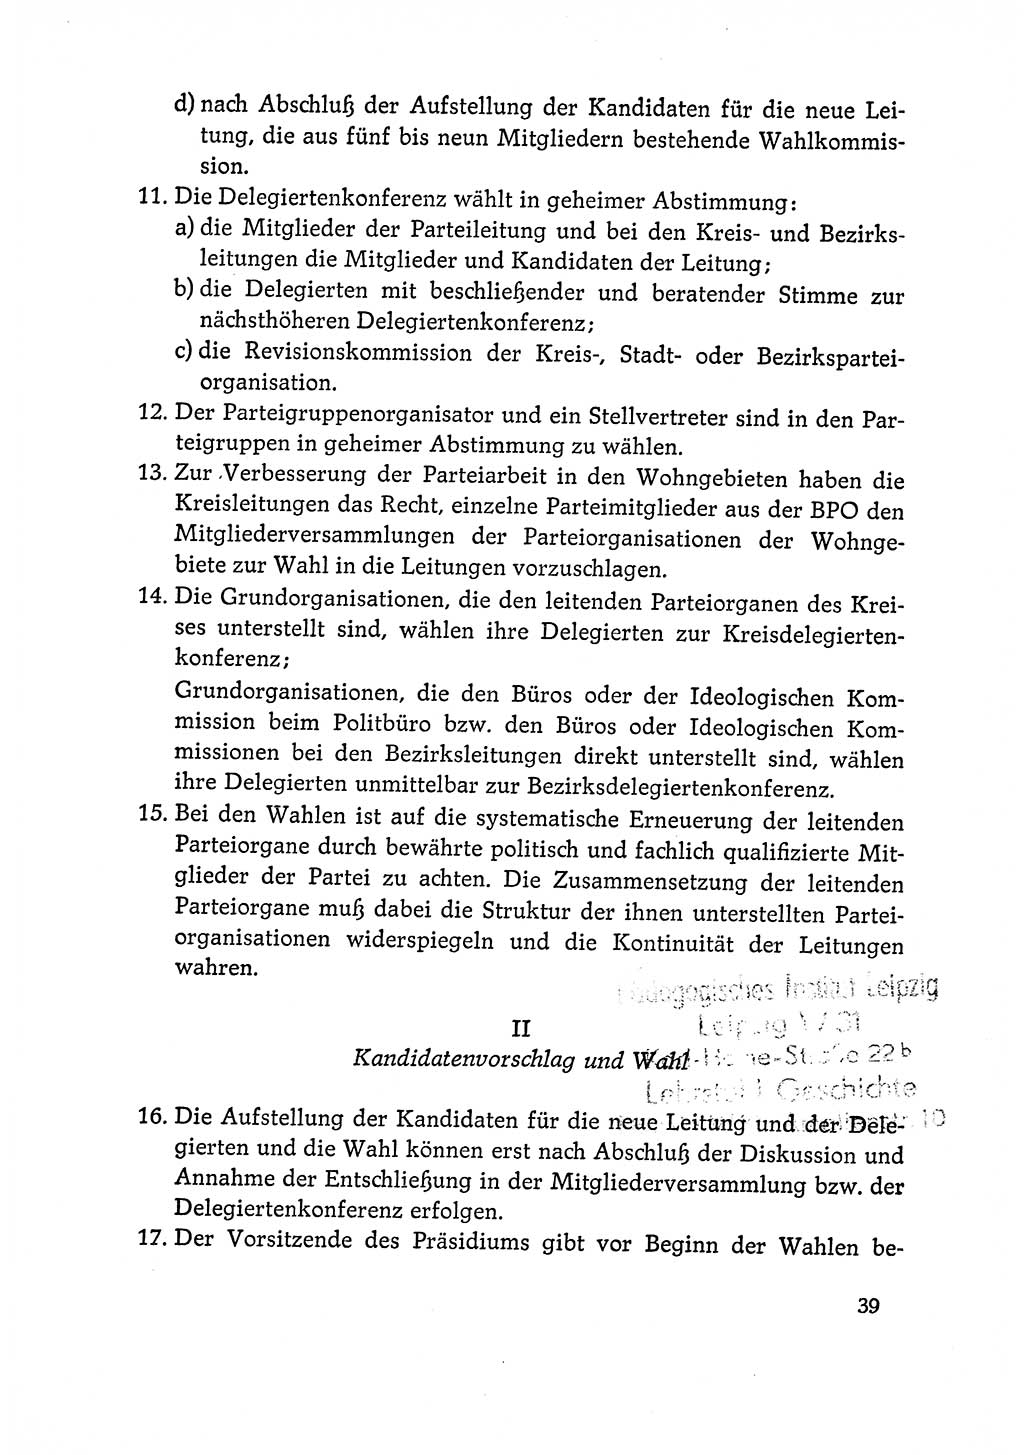 Dokumente der Sozialistischen Einheitspartei Deutschlands (SED) [Deutsche Demokratische Republik (DDR)] 1964-1965, Seite 39 (Dok. SED DDR 1964-1965, S. 39)